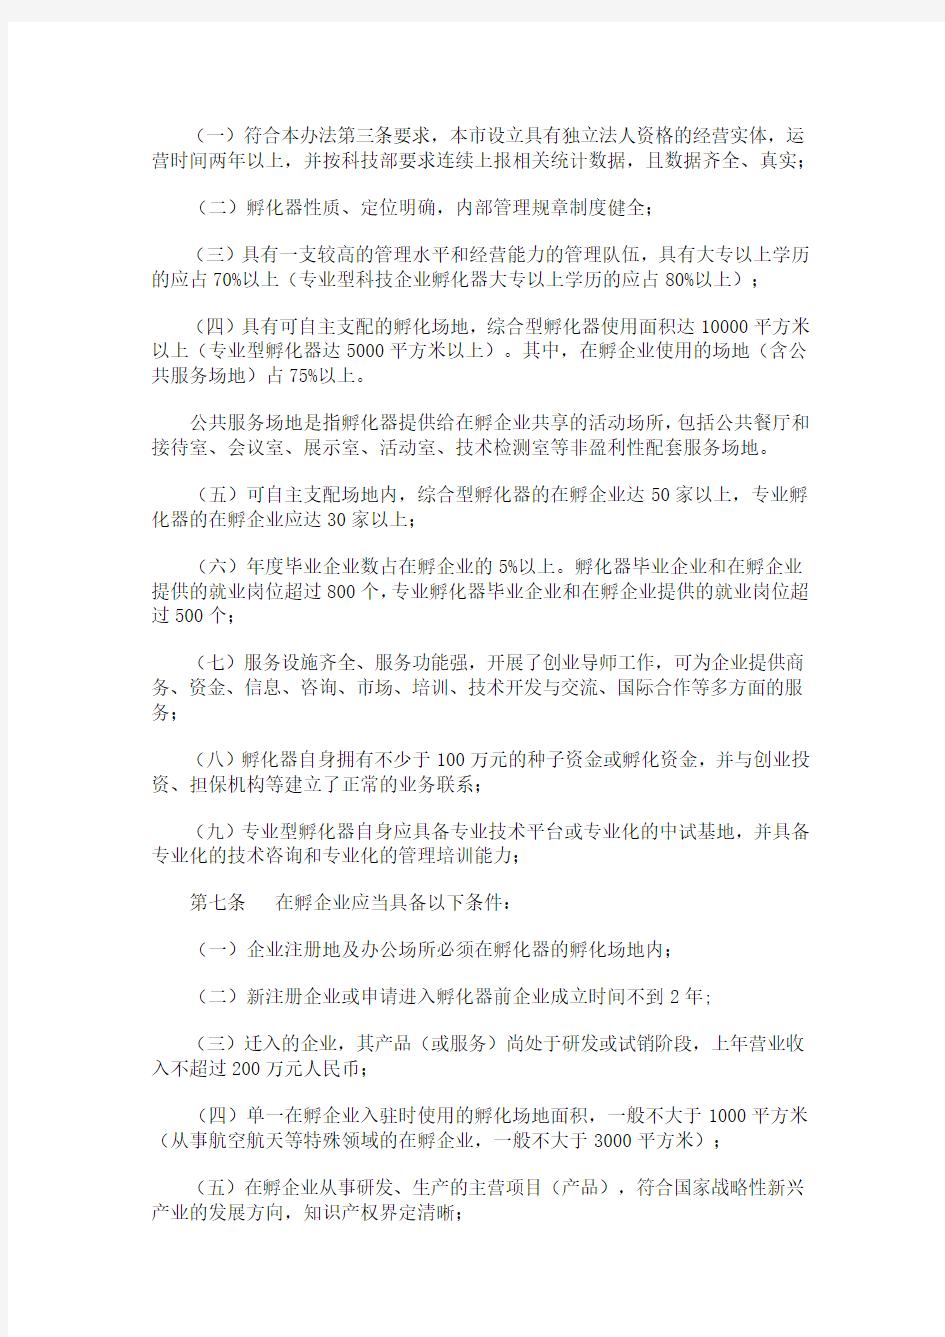 关于印发《天津市科技企业孵化器认定和管理办法》的通知及管理办法内容